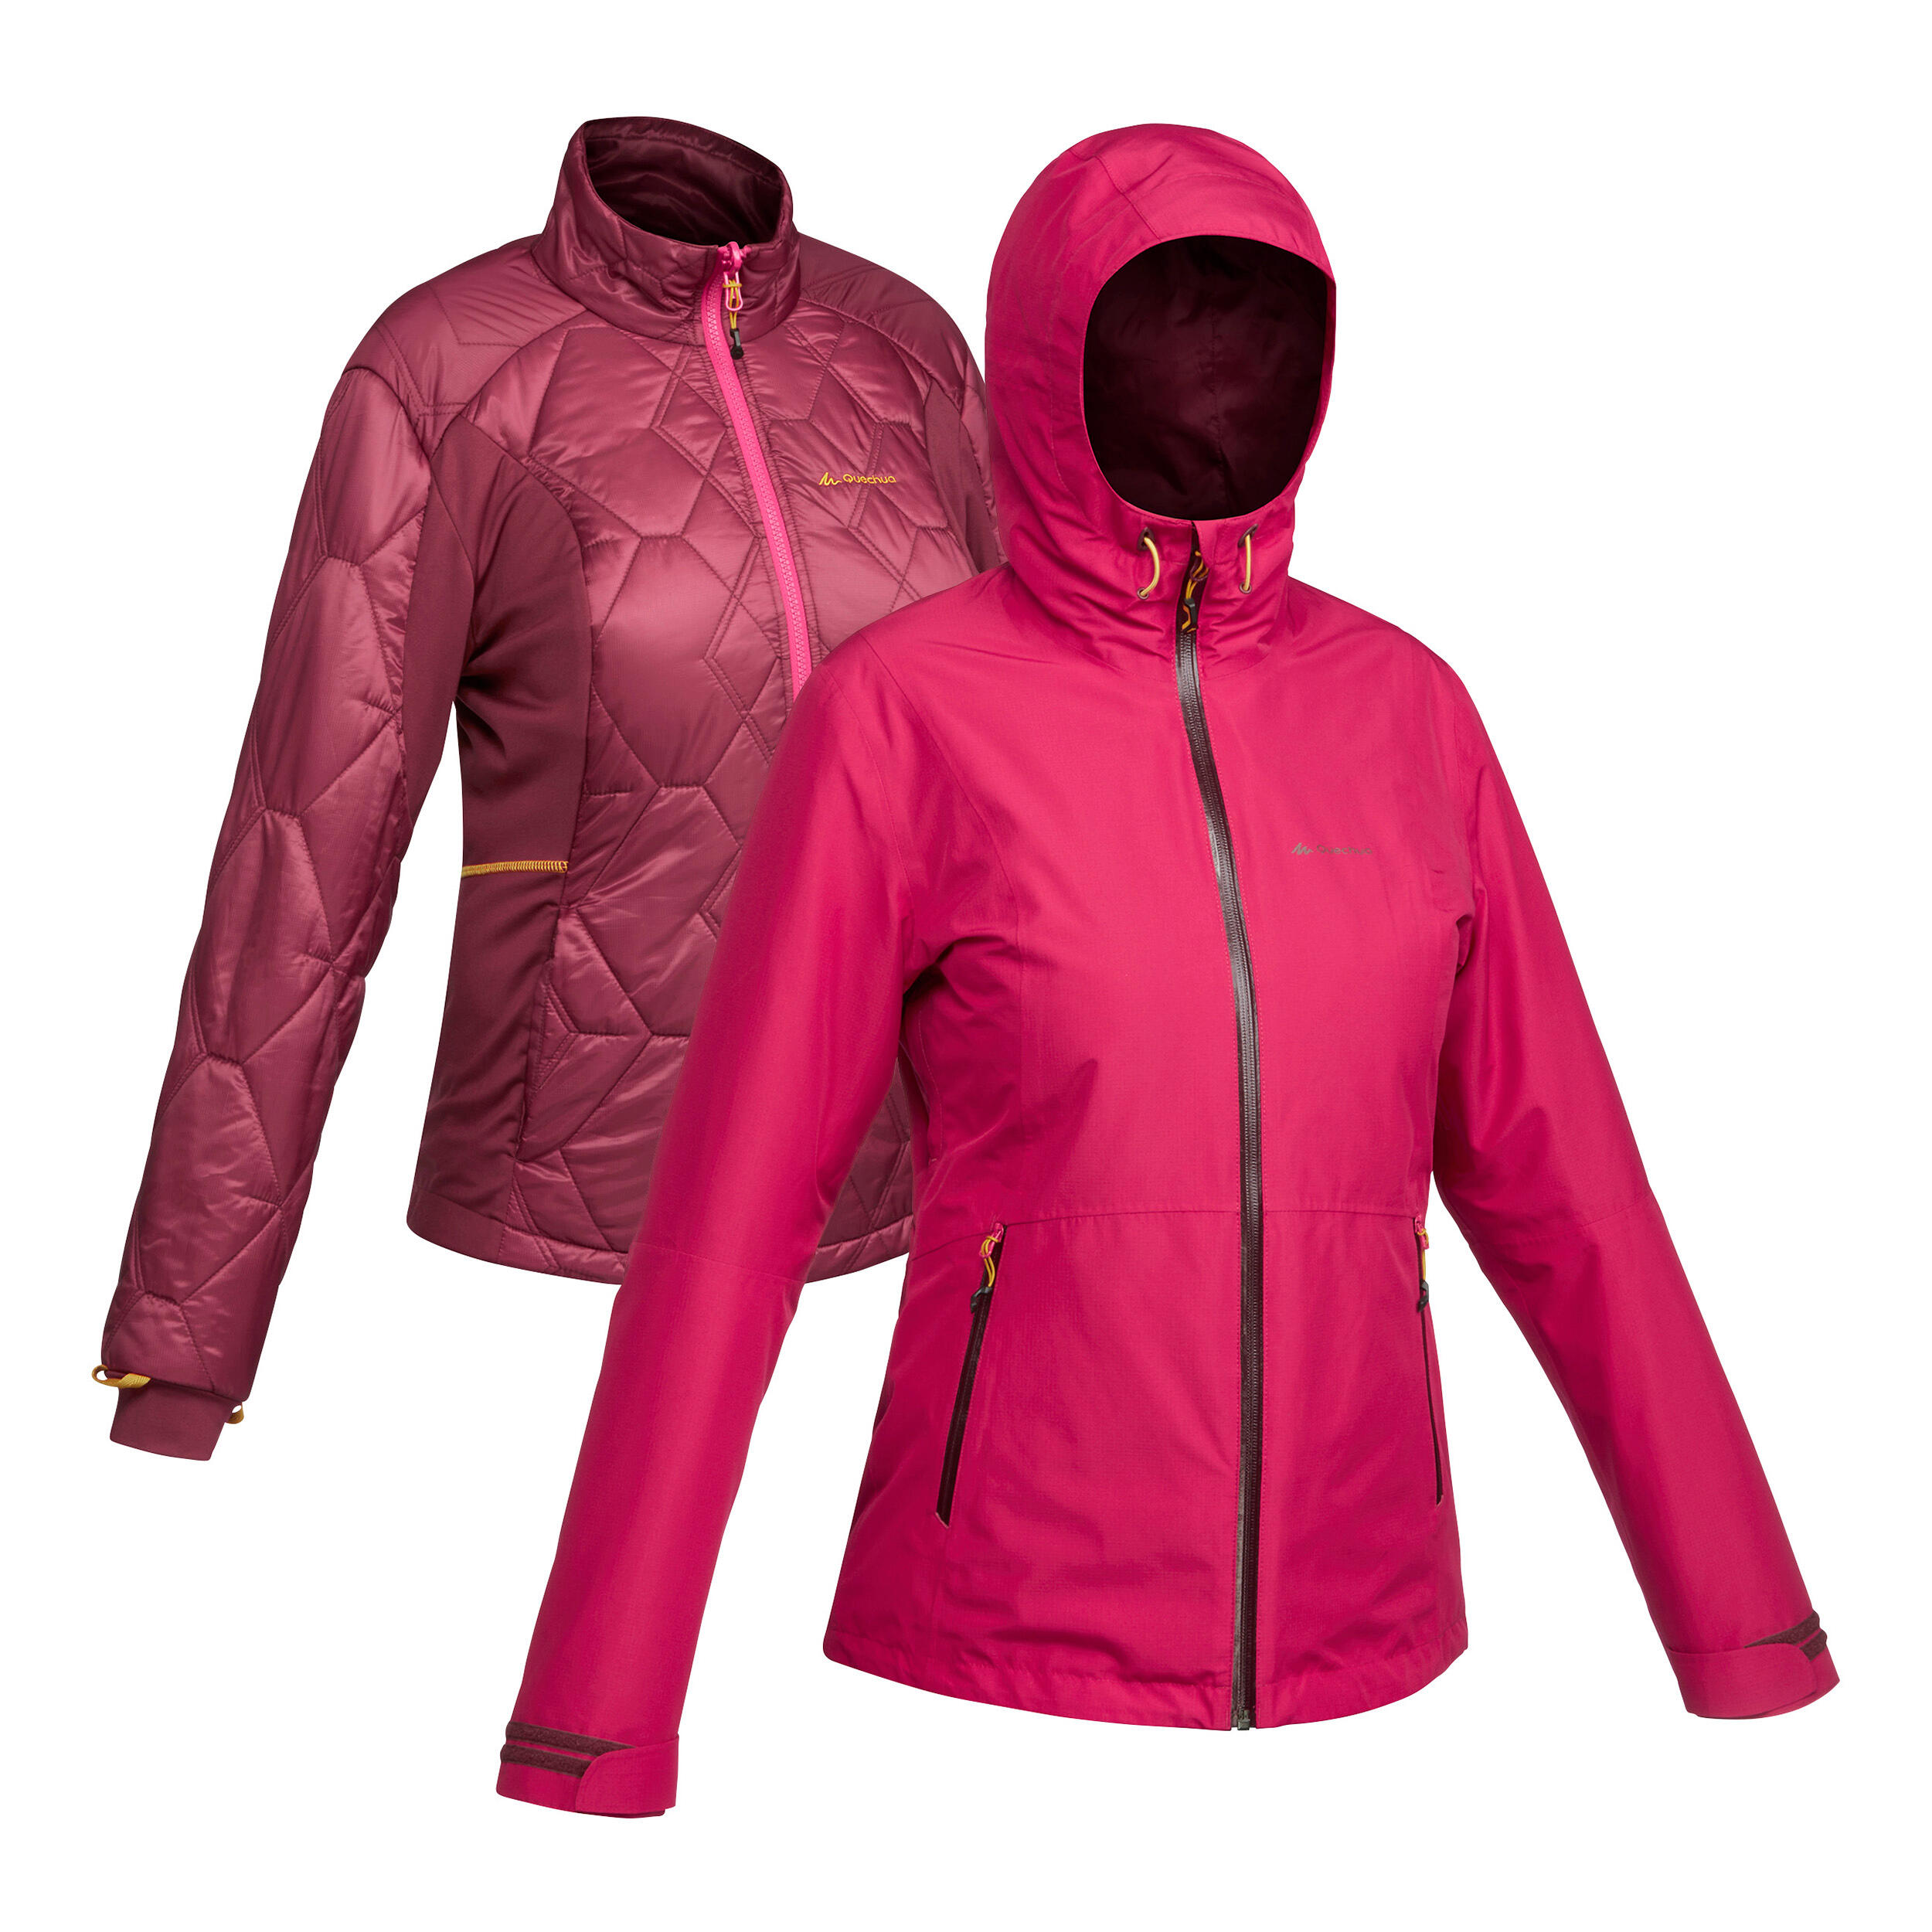 Opa bijeenkomst rijkdom waterdichte 3-in-1 jas voor backpacken dames comfort -8°c travel 500 roze ○  Decathlon BE